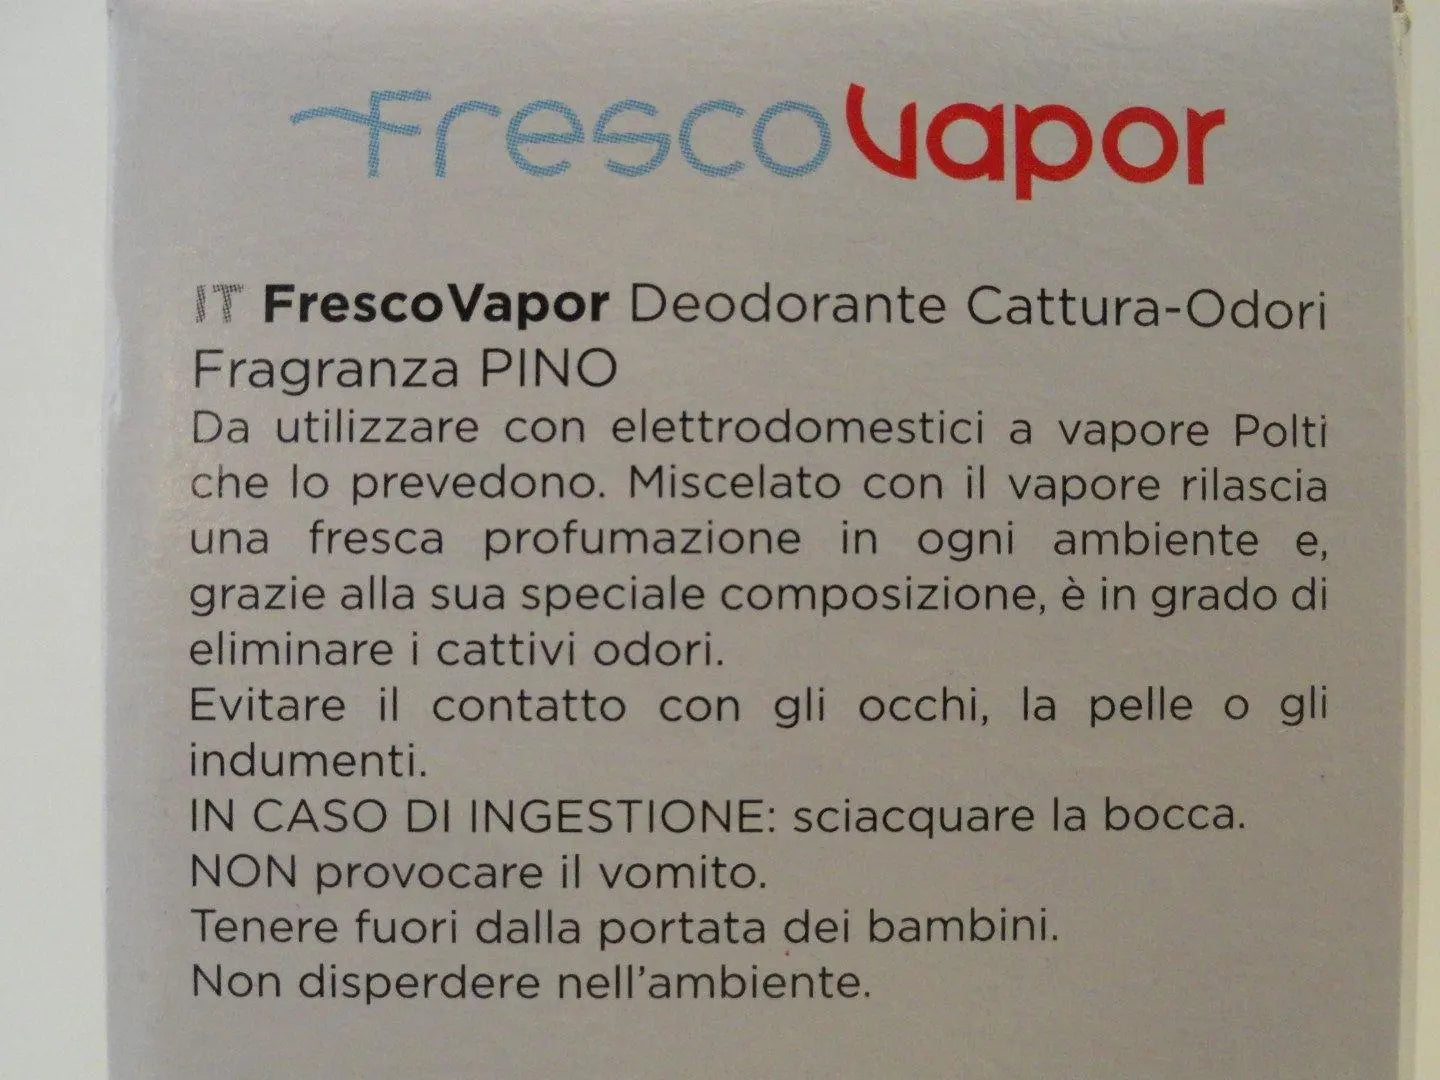 Deodorante cattura odori FrescoVapor per Vaporetto Polti POLTI